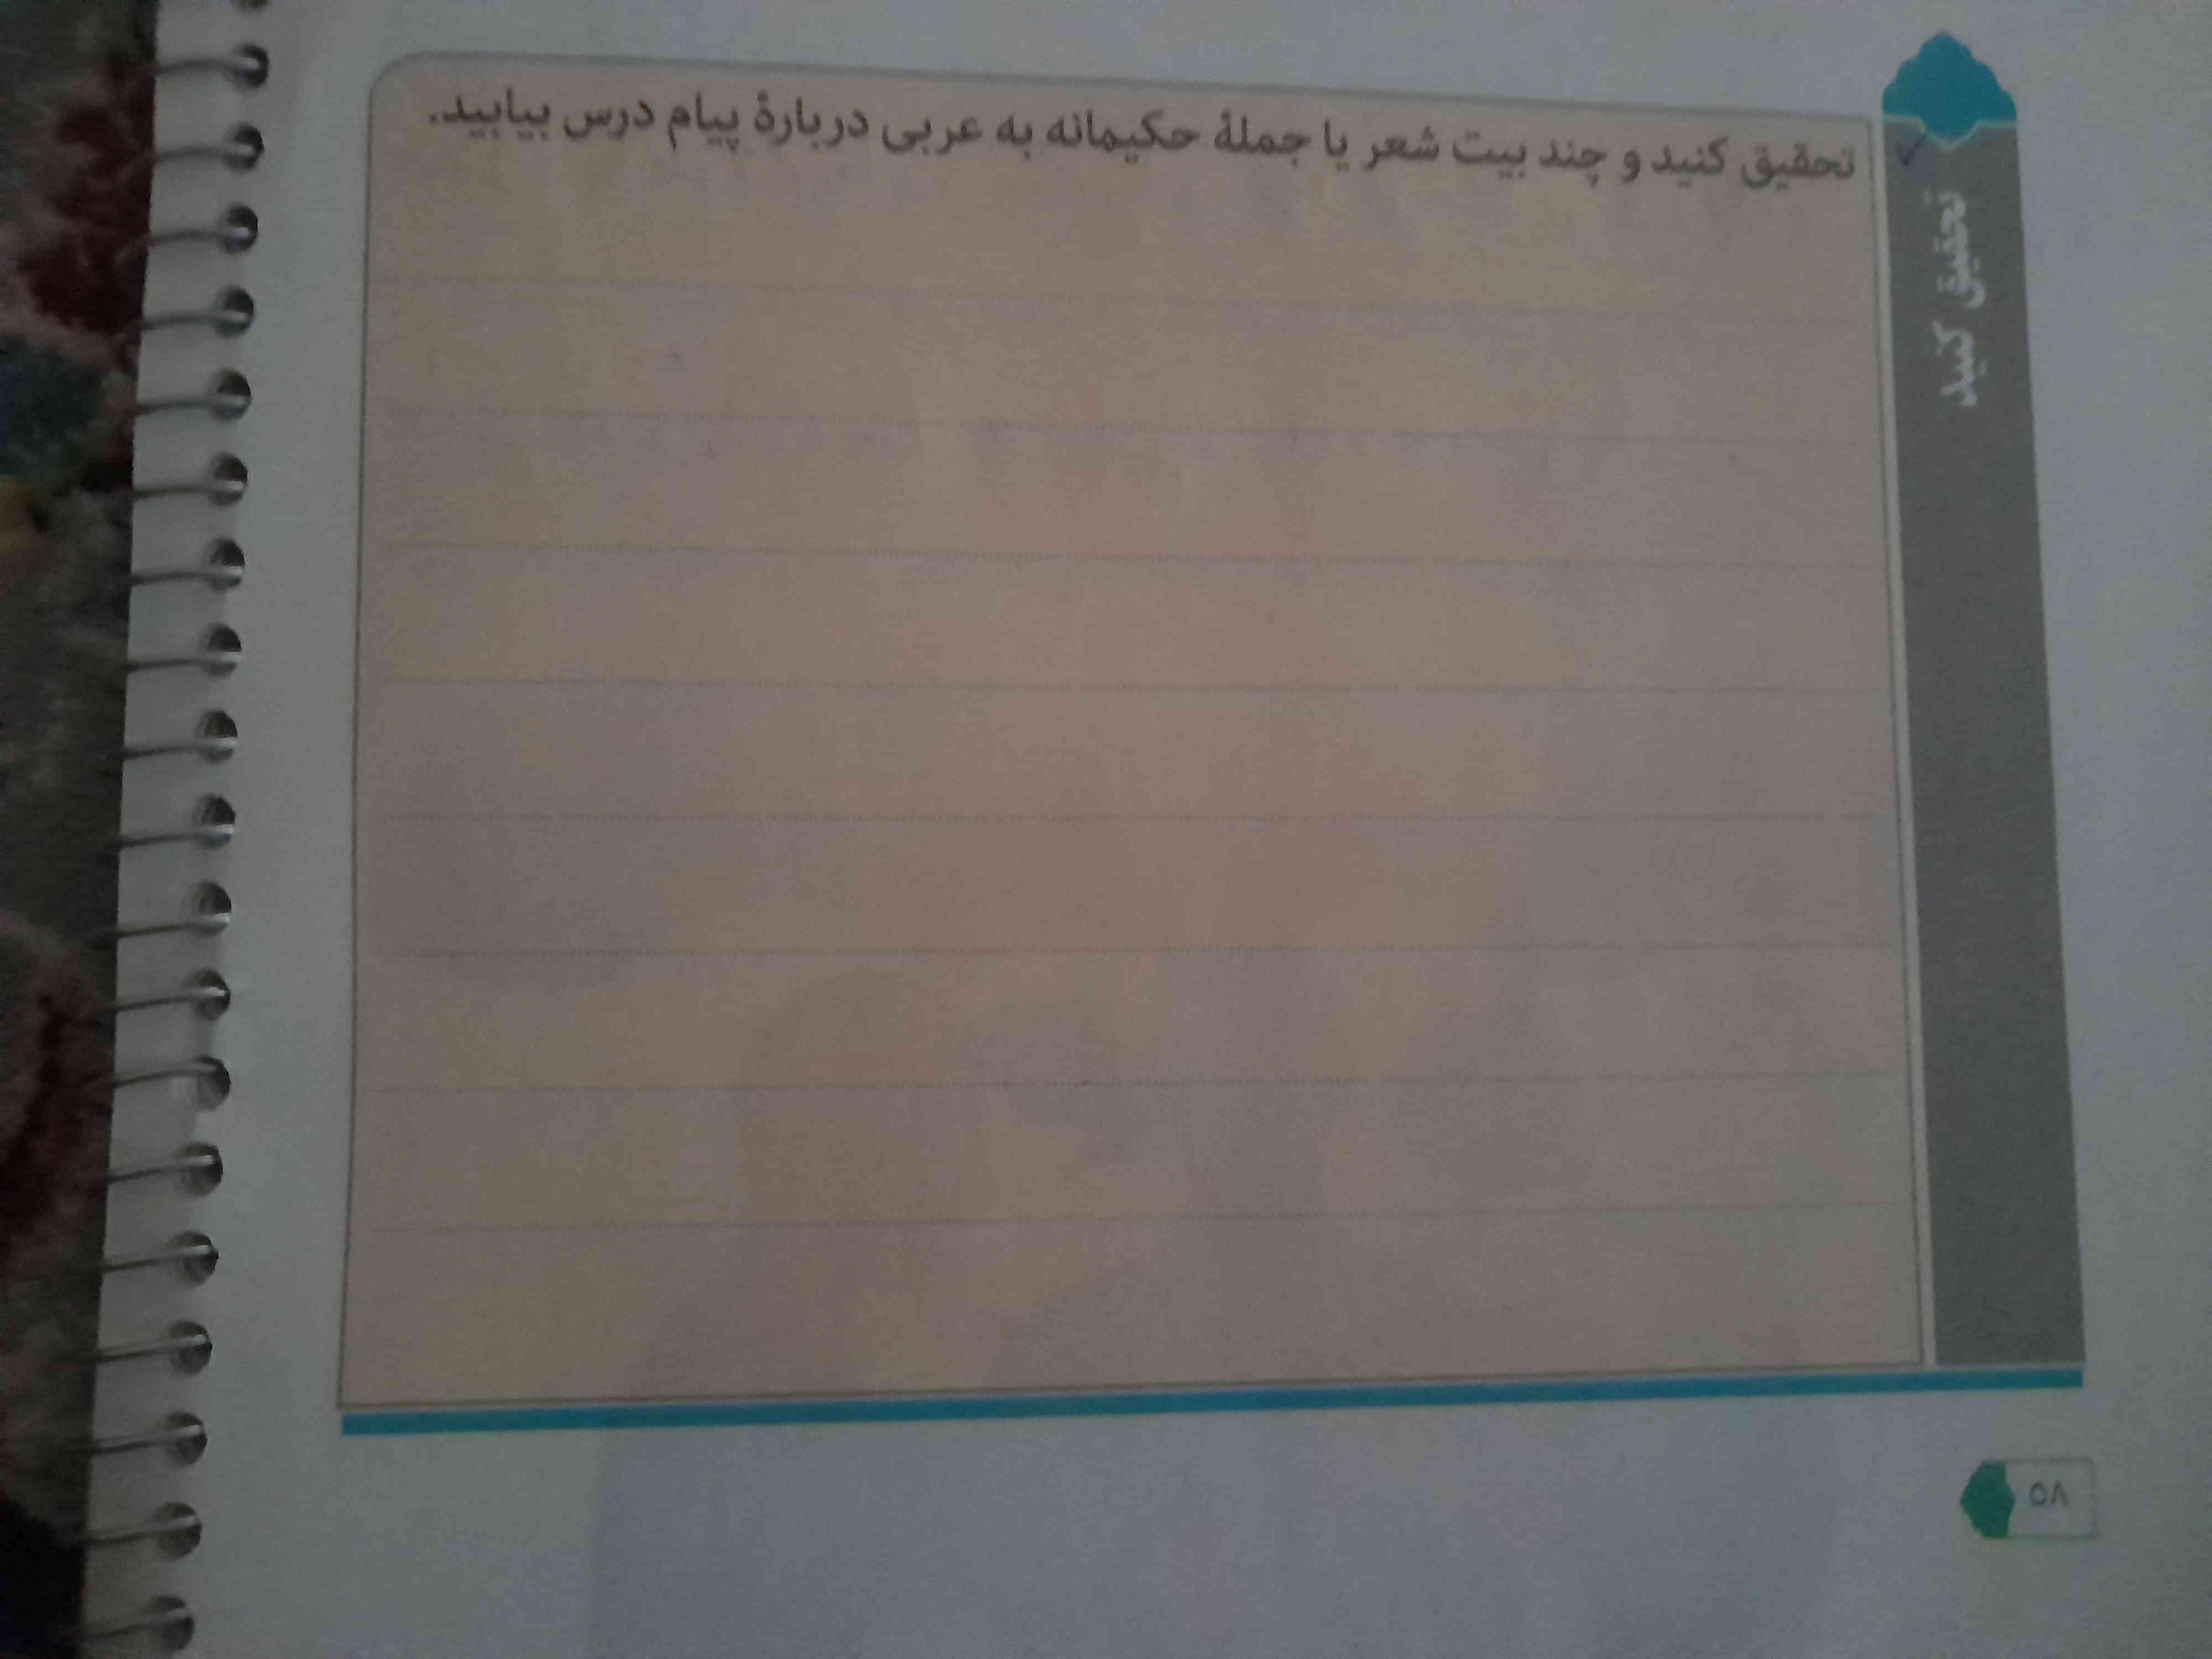 سلام. لطفا تحقیق کنید صفحه ۵۸ درس چهارم عربی رو اگه لطف میکنید، بیت یا شعر هاتونو شرح بدید، تاج میدم.